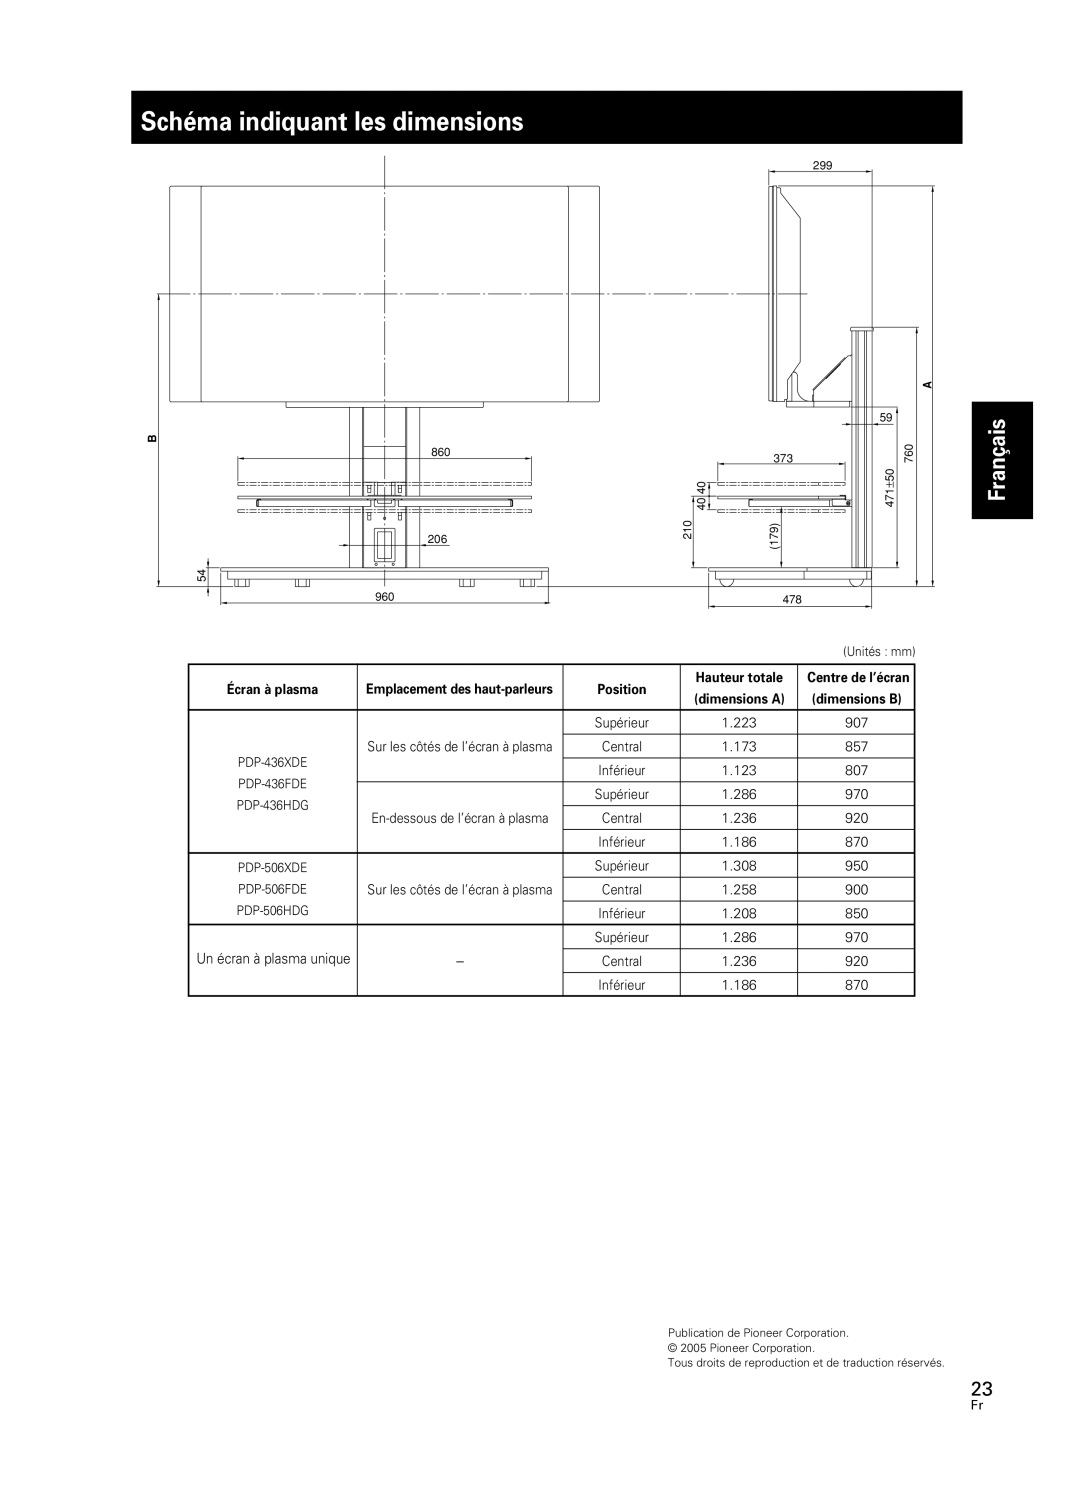 Pioneer PDK-FS05 manual Schéma indiquant les dimensions, Français, Écran à plasma, Position, Hauteur totale 